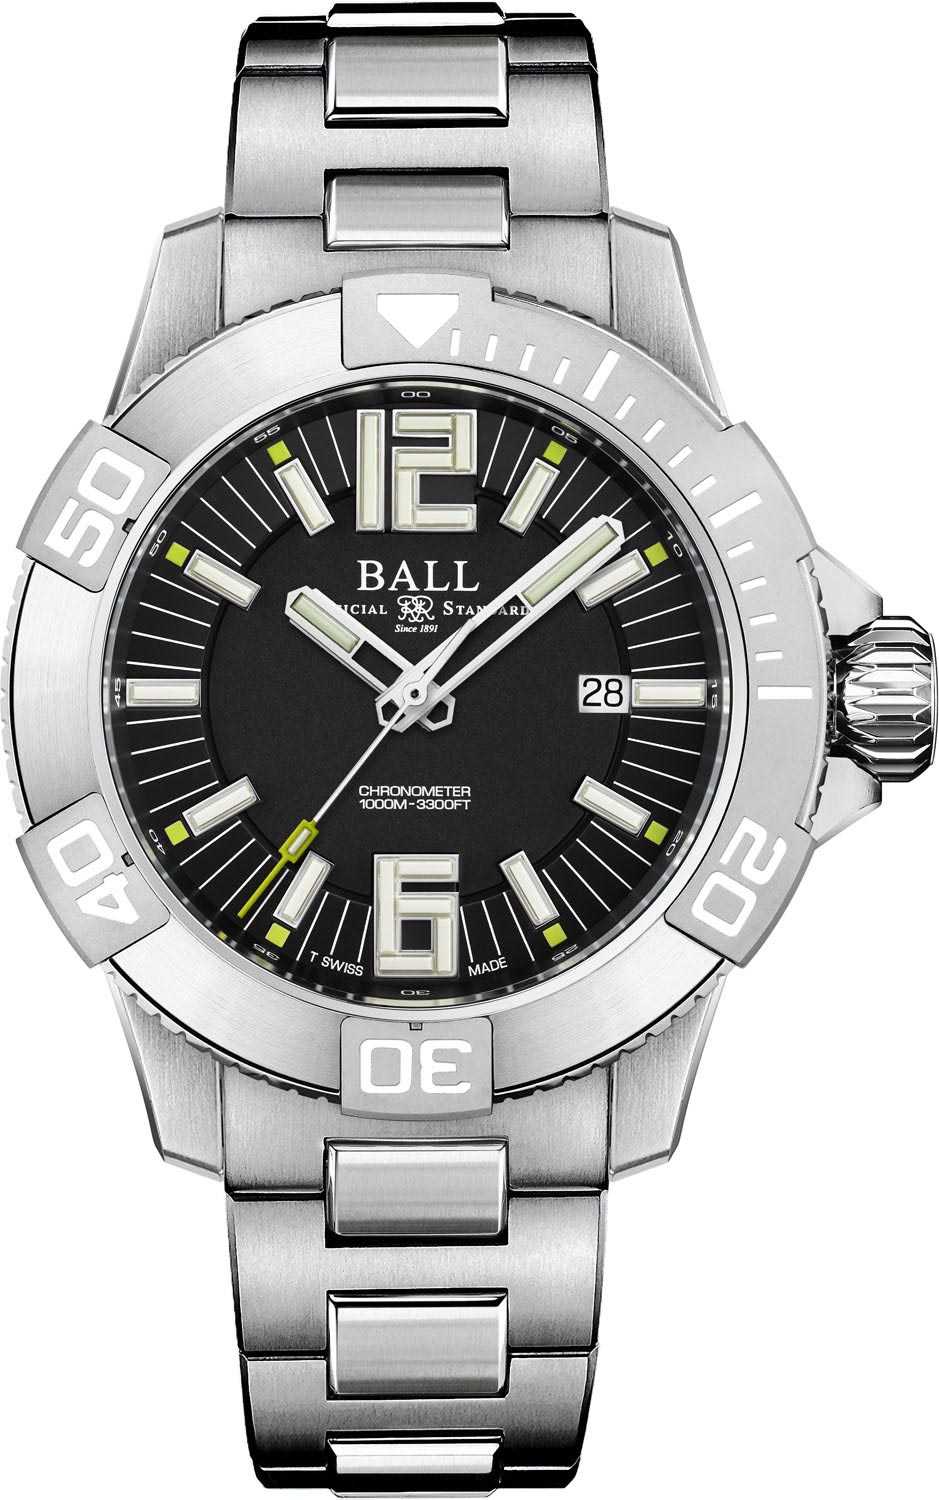 BALL DM3002A-SC-BK